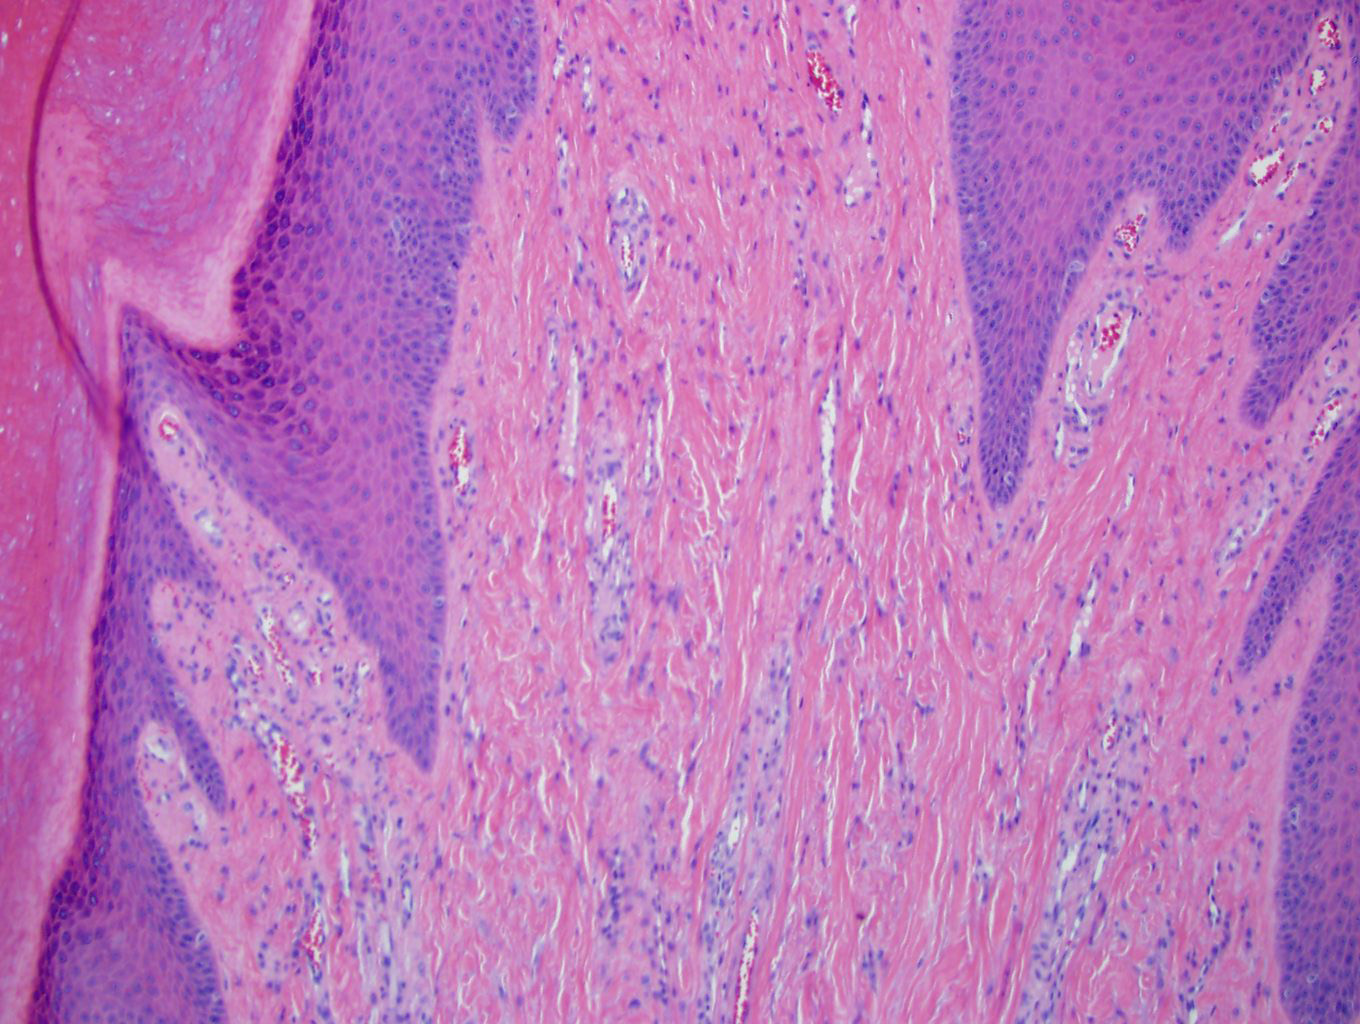 Prominent dense collagen